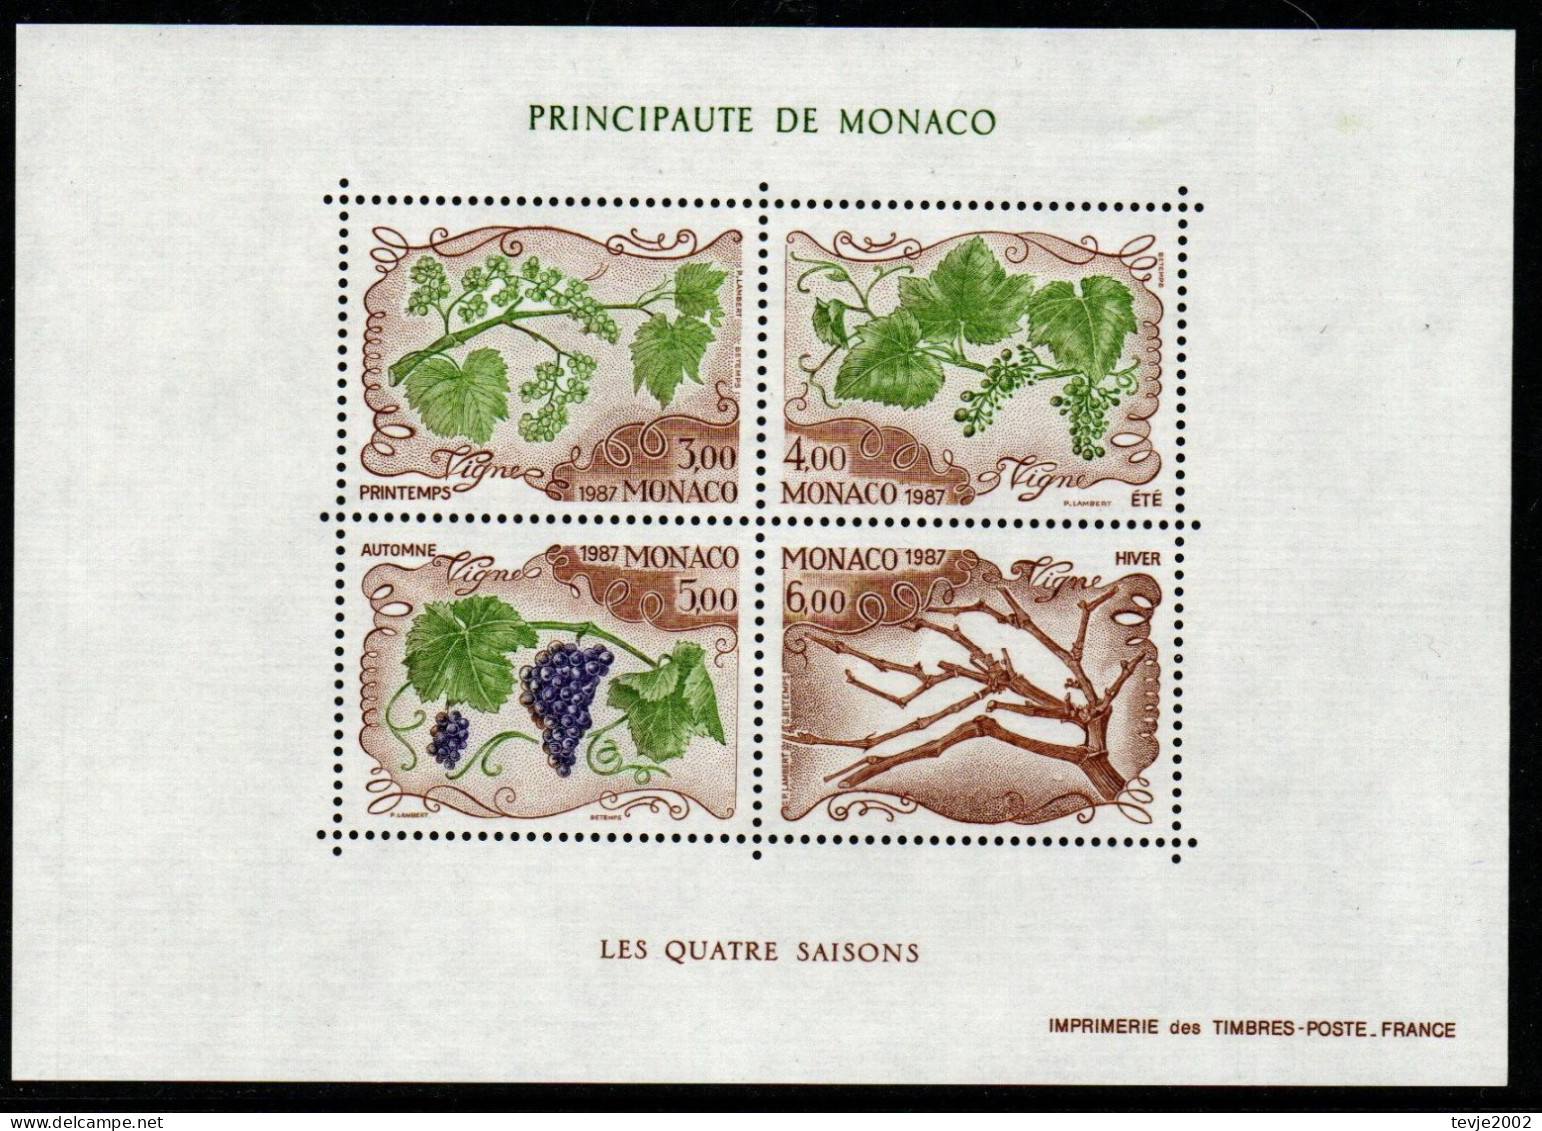 Monaco 1987 - Mi.Nr. Block 36 - Postfrisch MNH - Früchte Fruits Trauben Wein Vine - Obst & Früchte